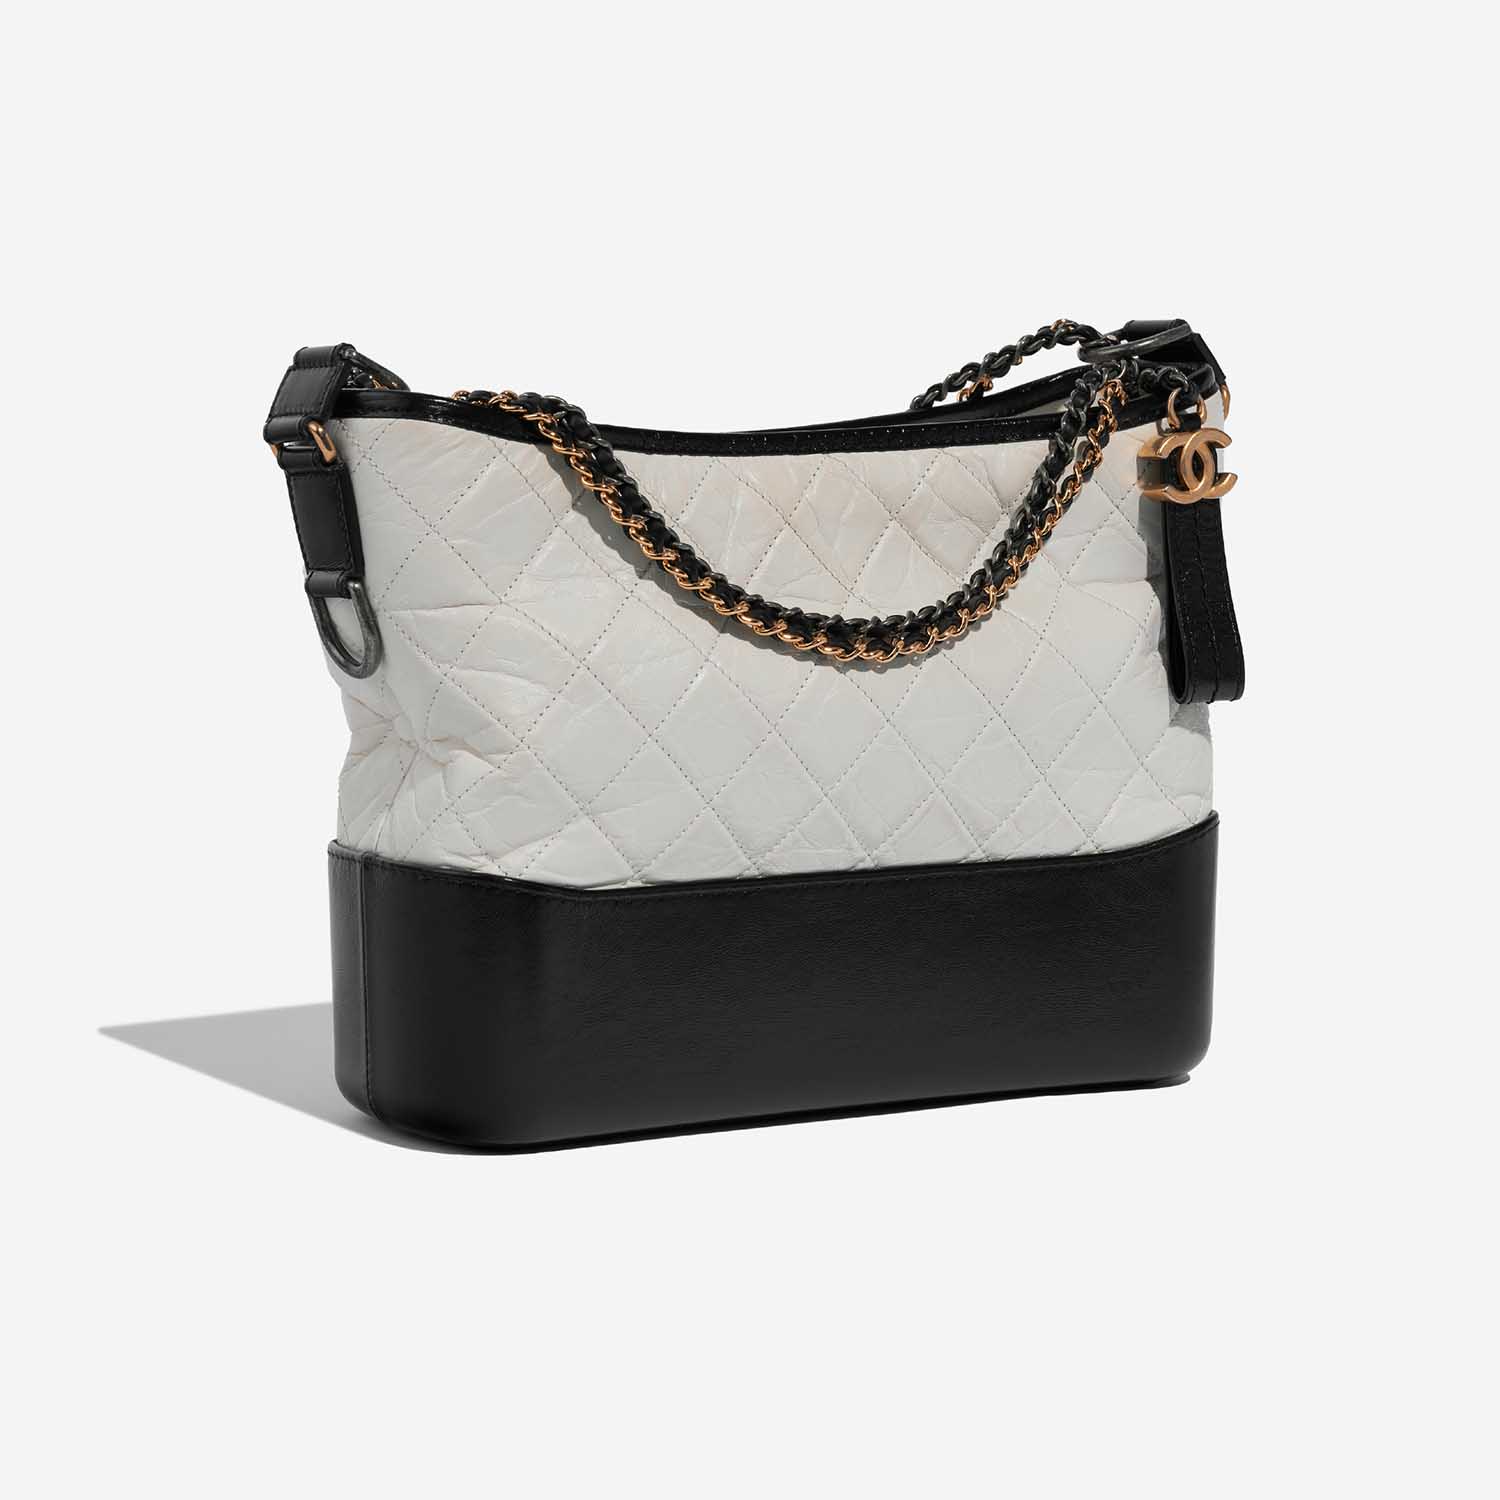 Chanel Gabrielle Medium Black-White Side Front | Verkaufen Sie Ihre Designer-Tasche auf Saclab.com